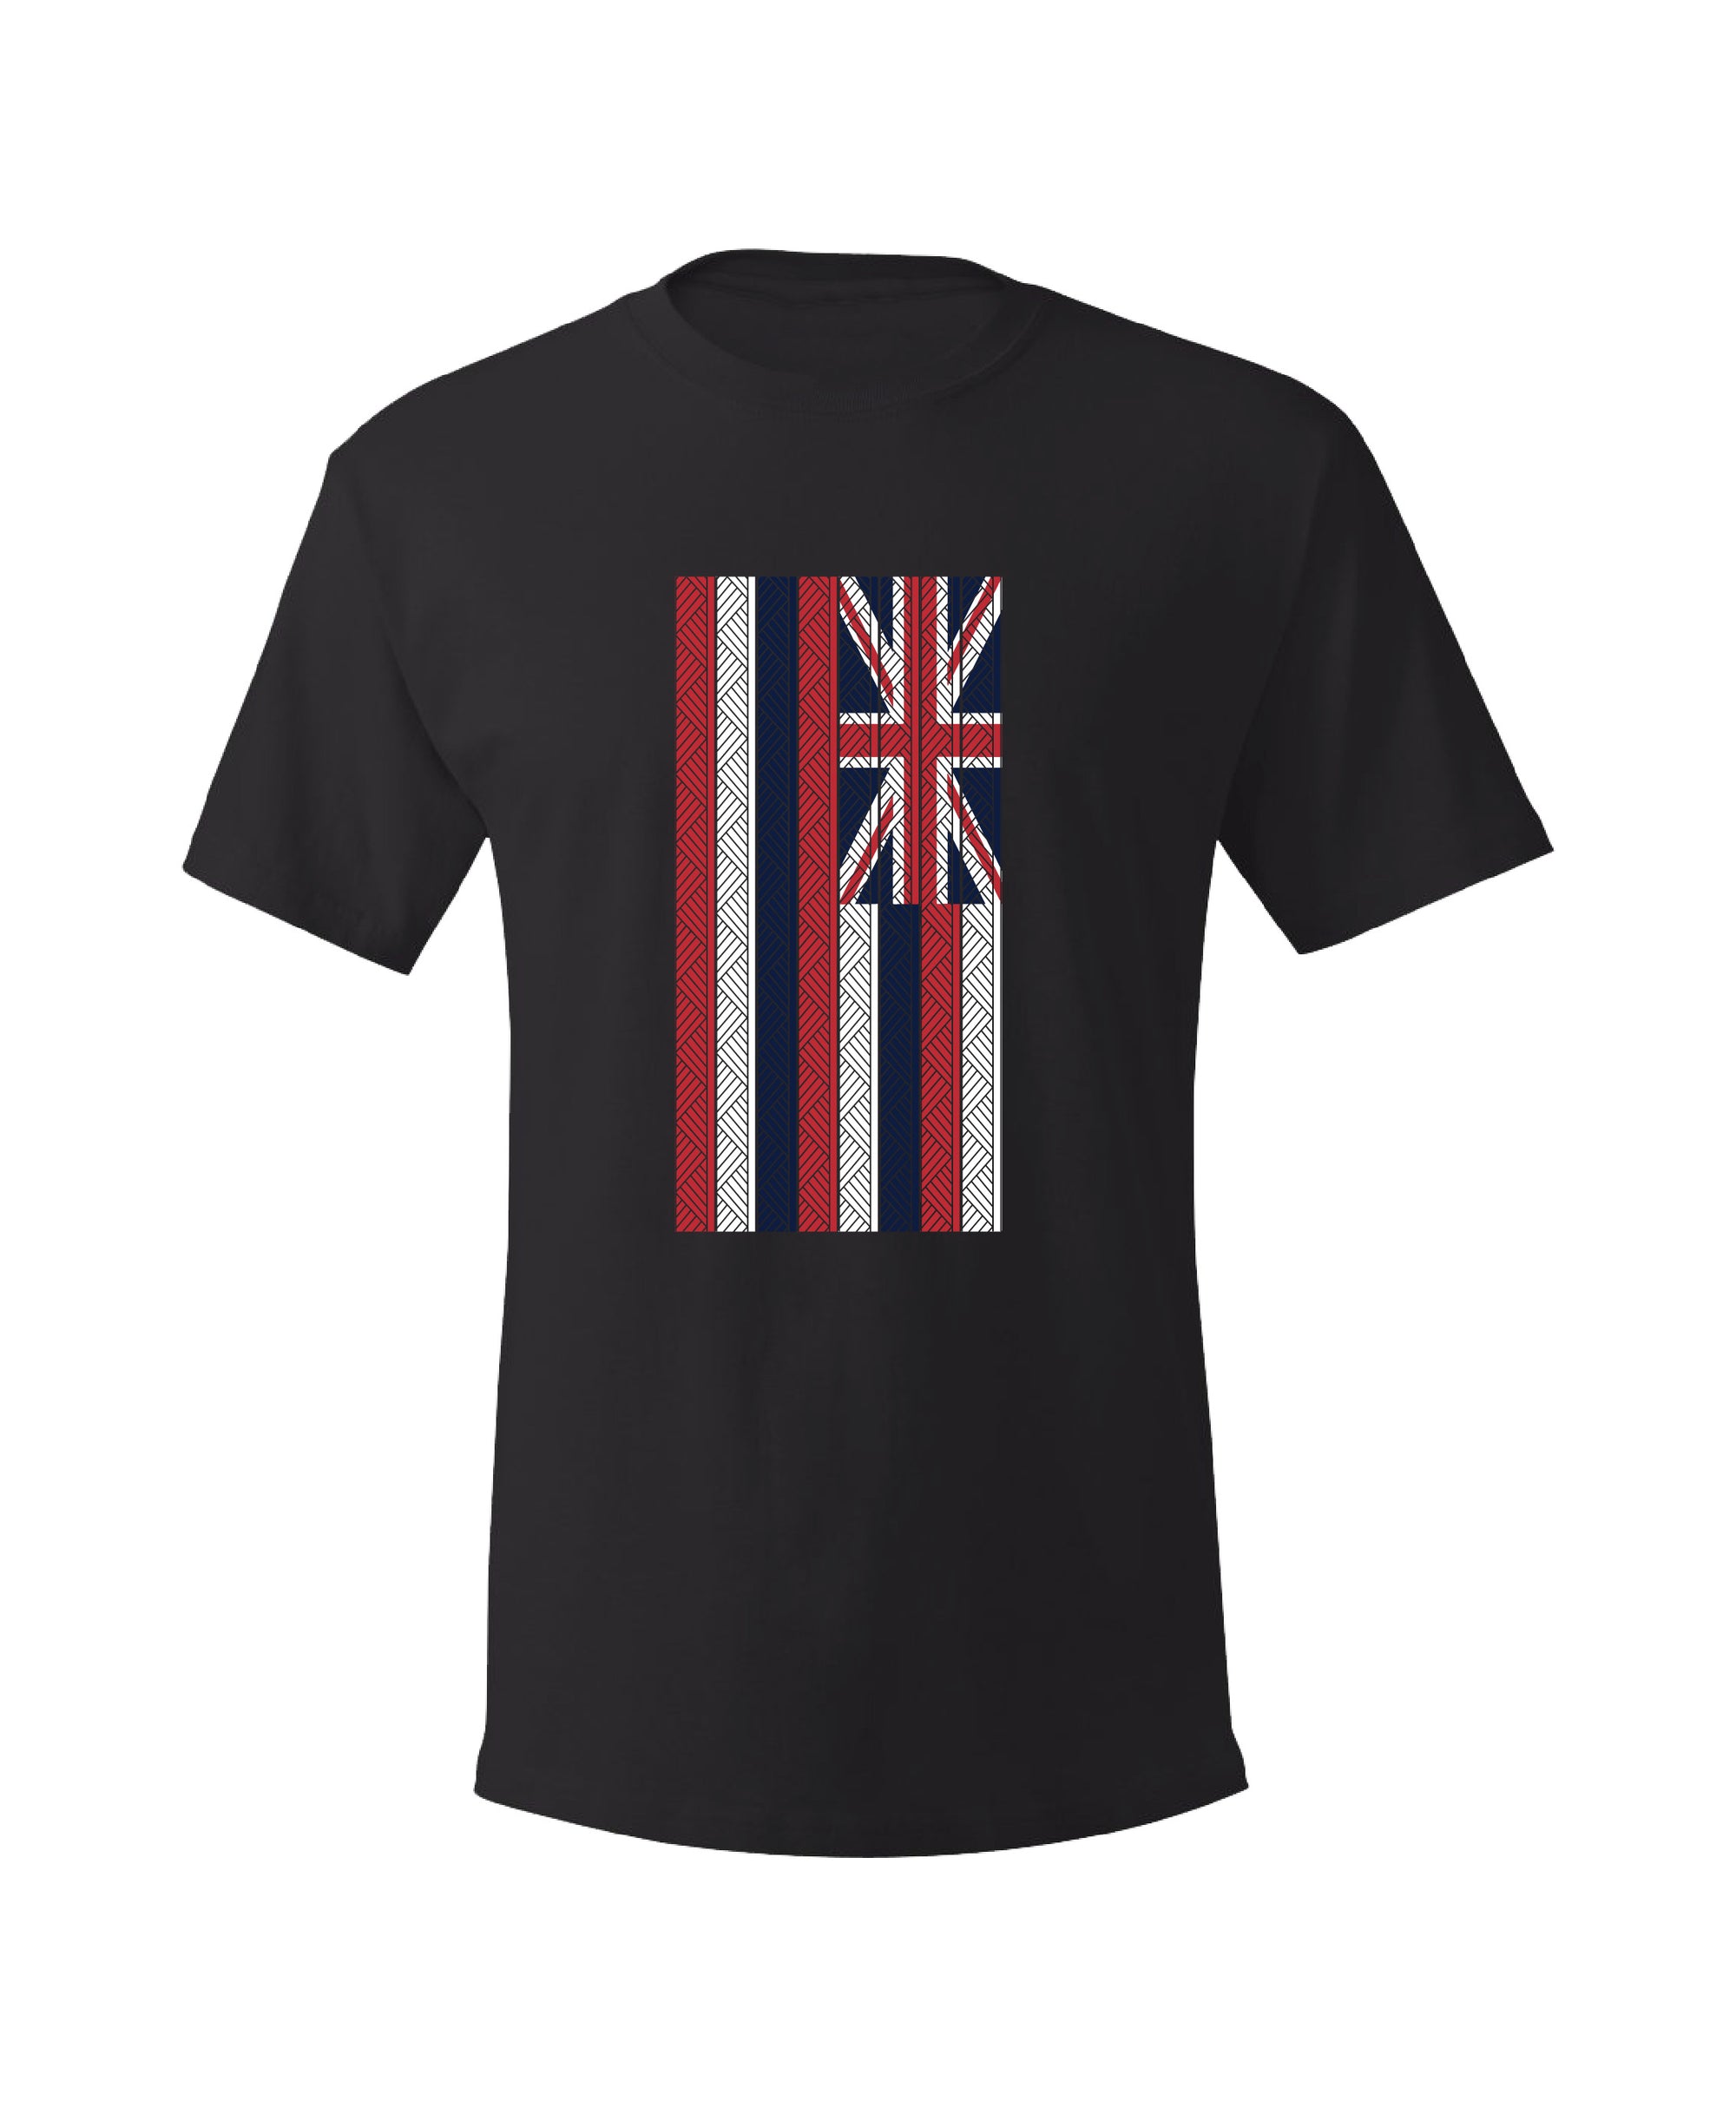 Pop-Up Mākeke - Hae Hawaii-WP - Hae Ulana Men's Short Sleeve T-Shirt